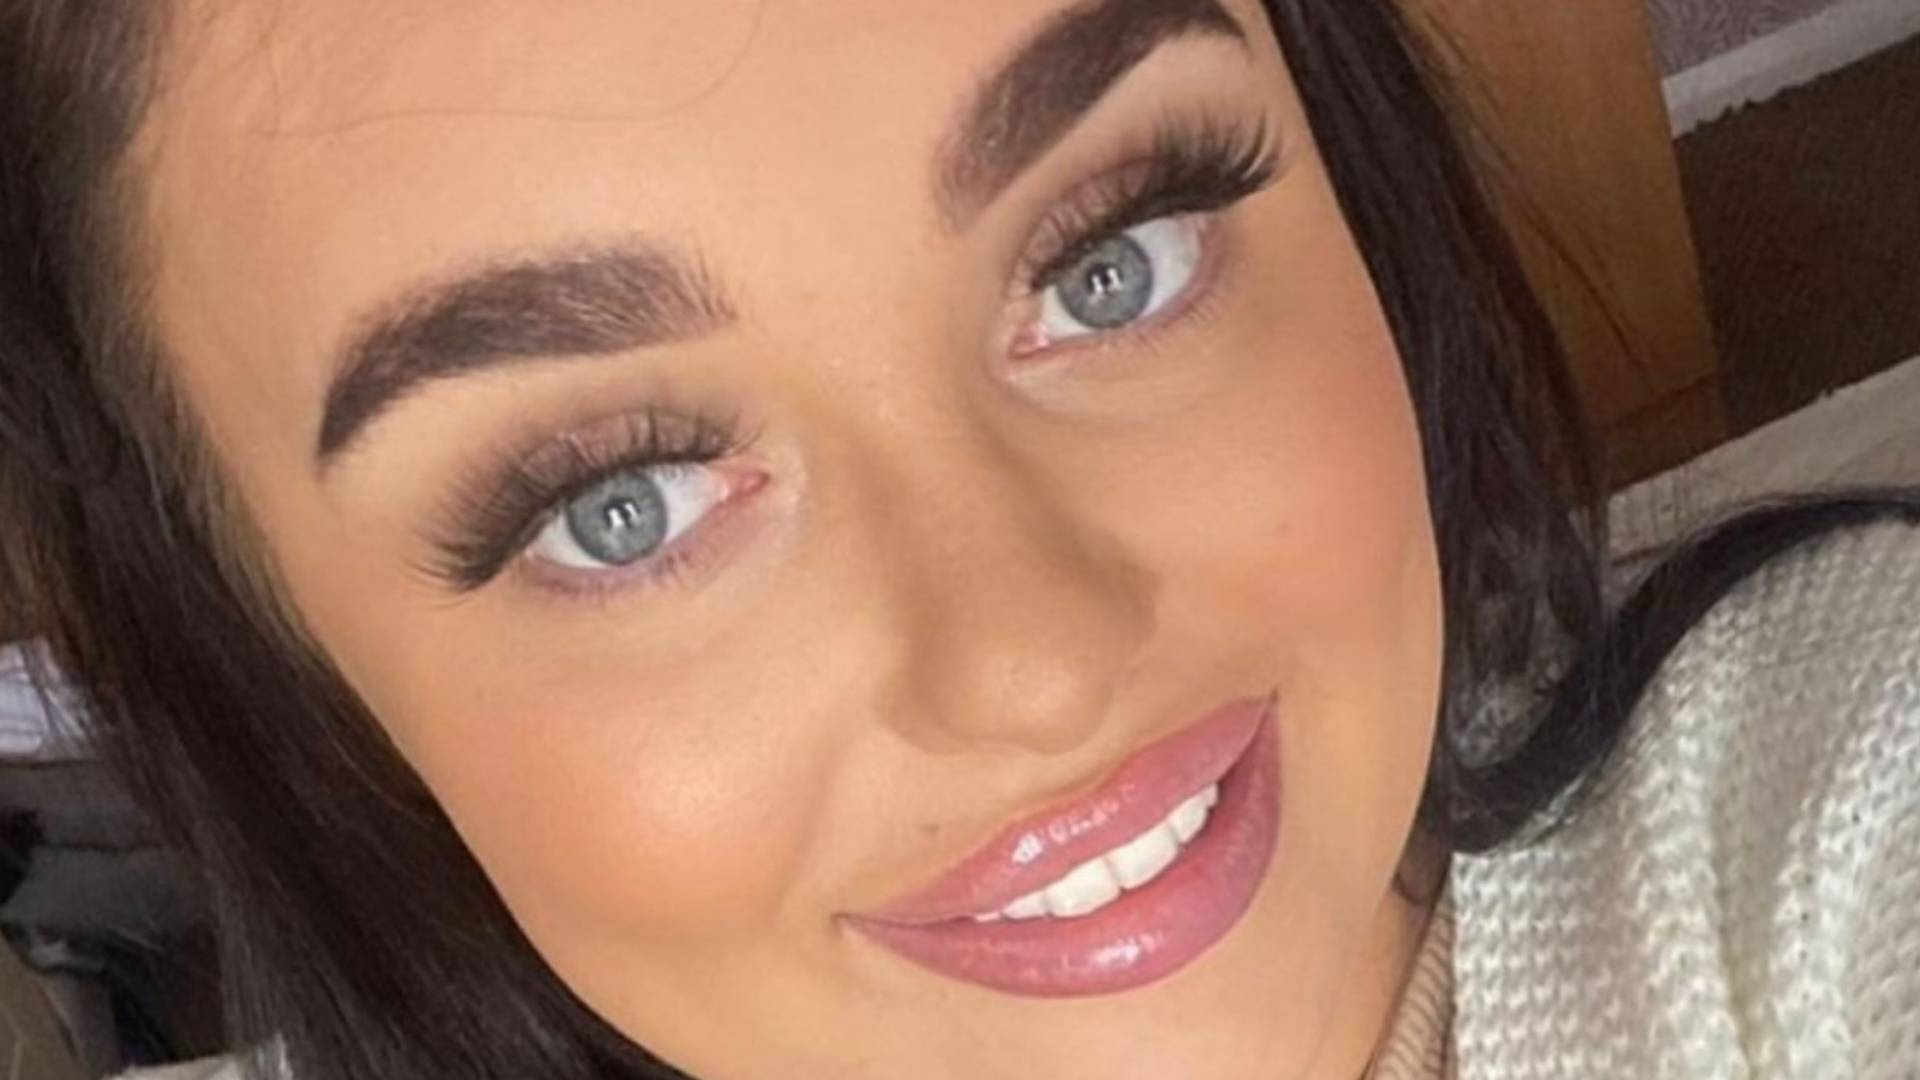 A 21 éves lány majdnem megvakult, miután rosszul adták be neki a szájfeltöltő injekciót  - fotók